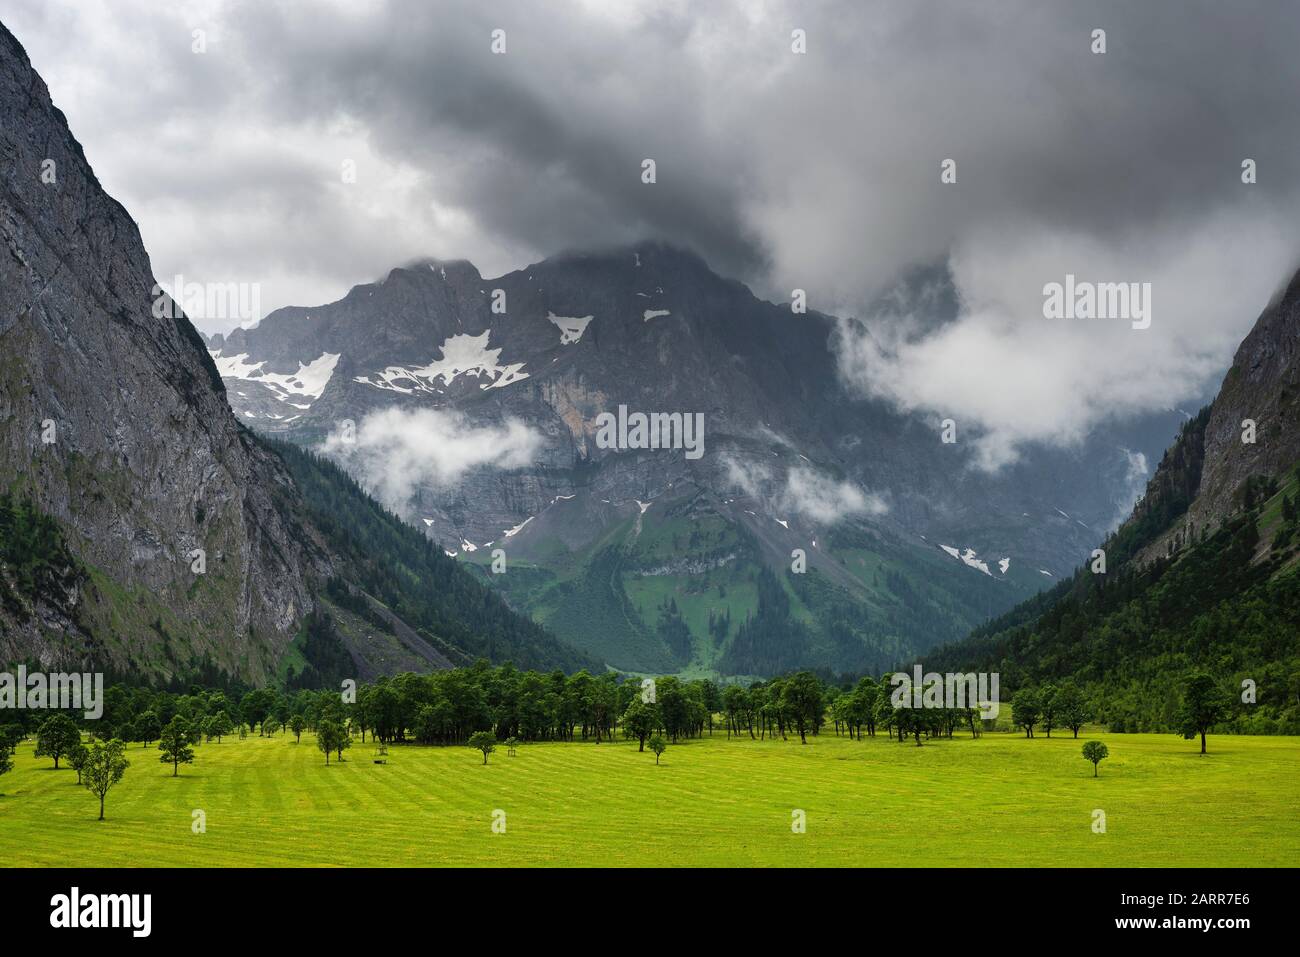 Nuages sombres avec pluie et illuminations ensoleillées sur les massifs rocheux de montagne et les érables du pâturage Grosser Ahornboden, Tyrol, Autriche, Europe Banque D'Images